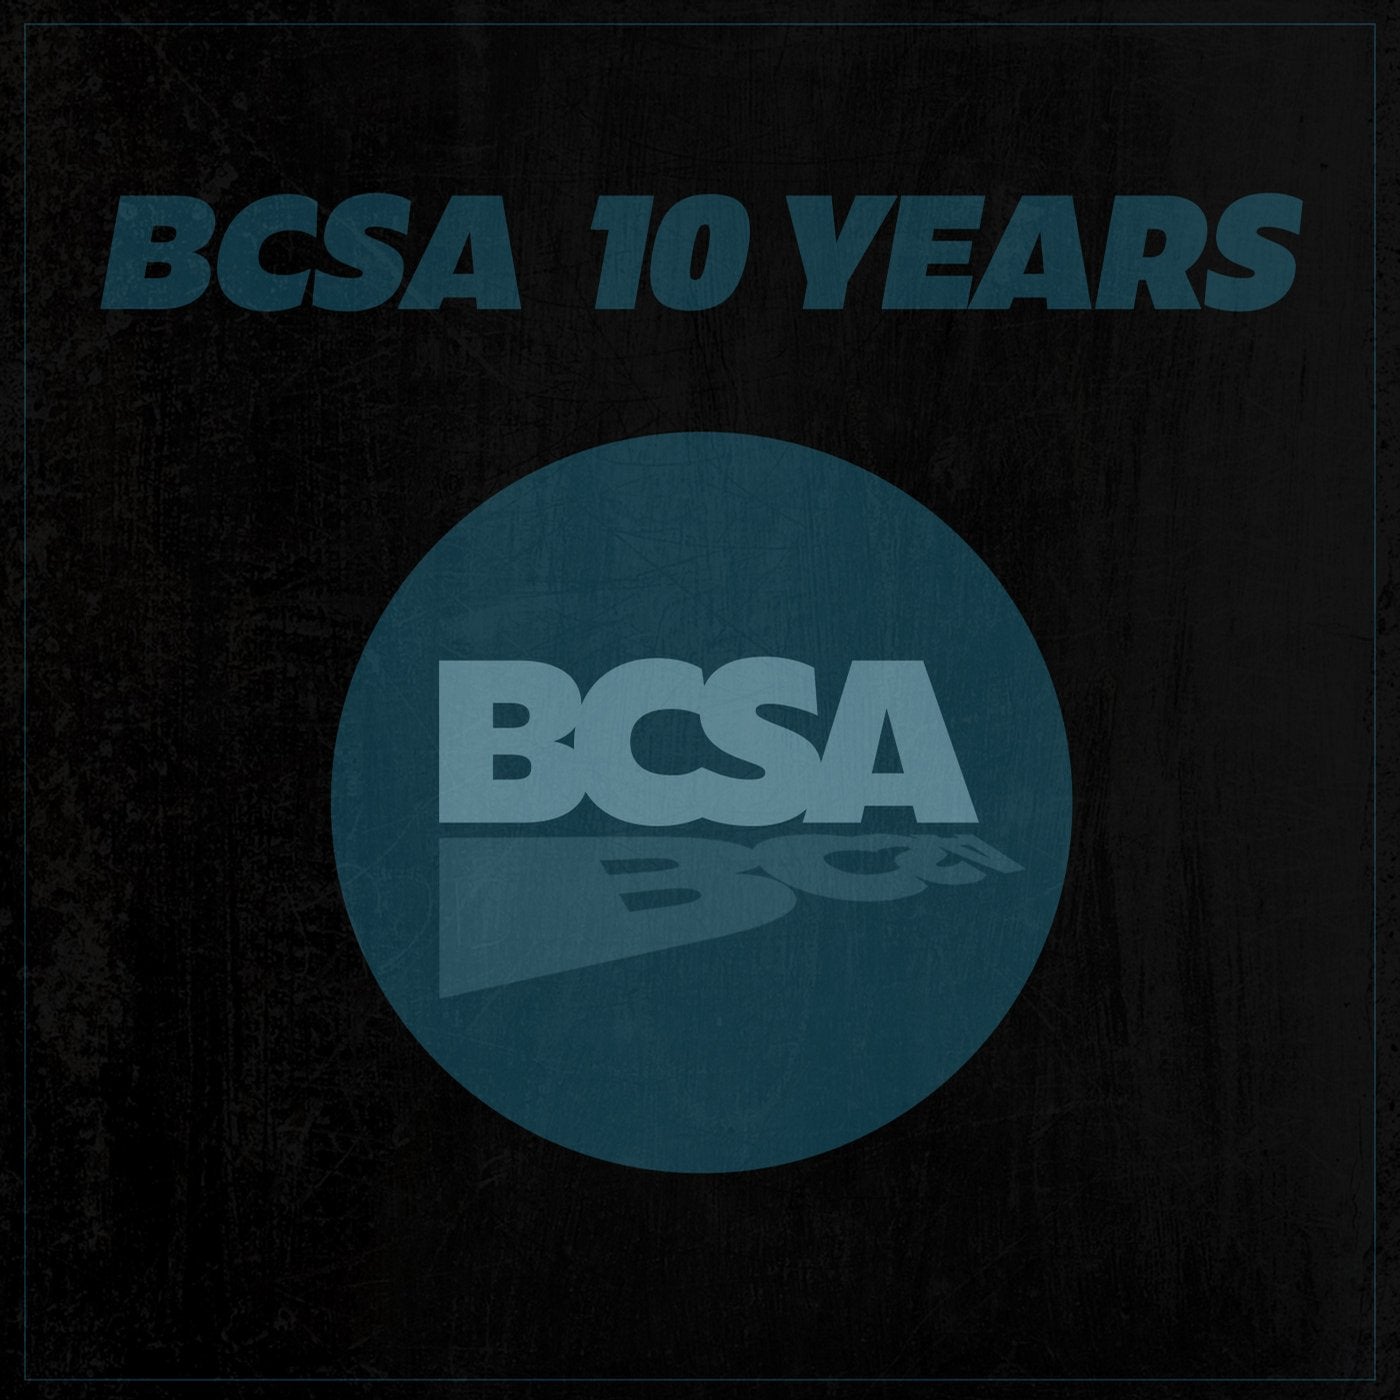 BCSA 10 Years